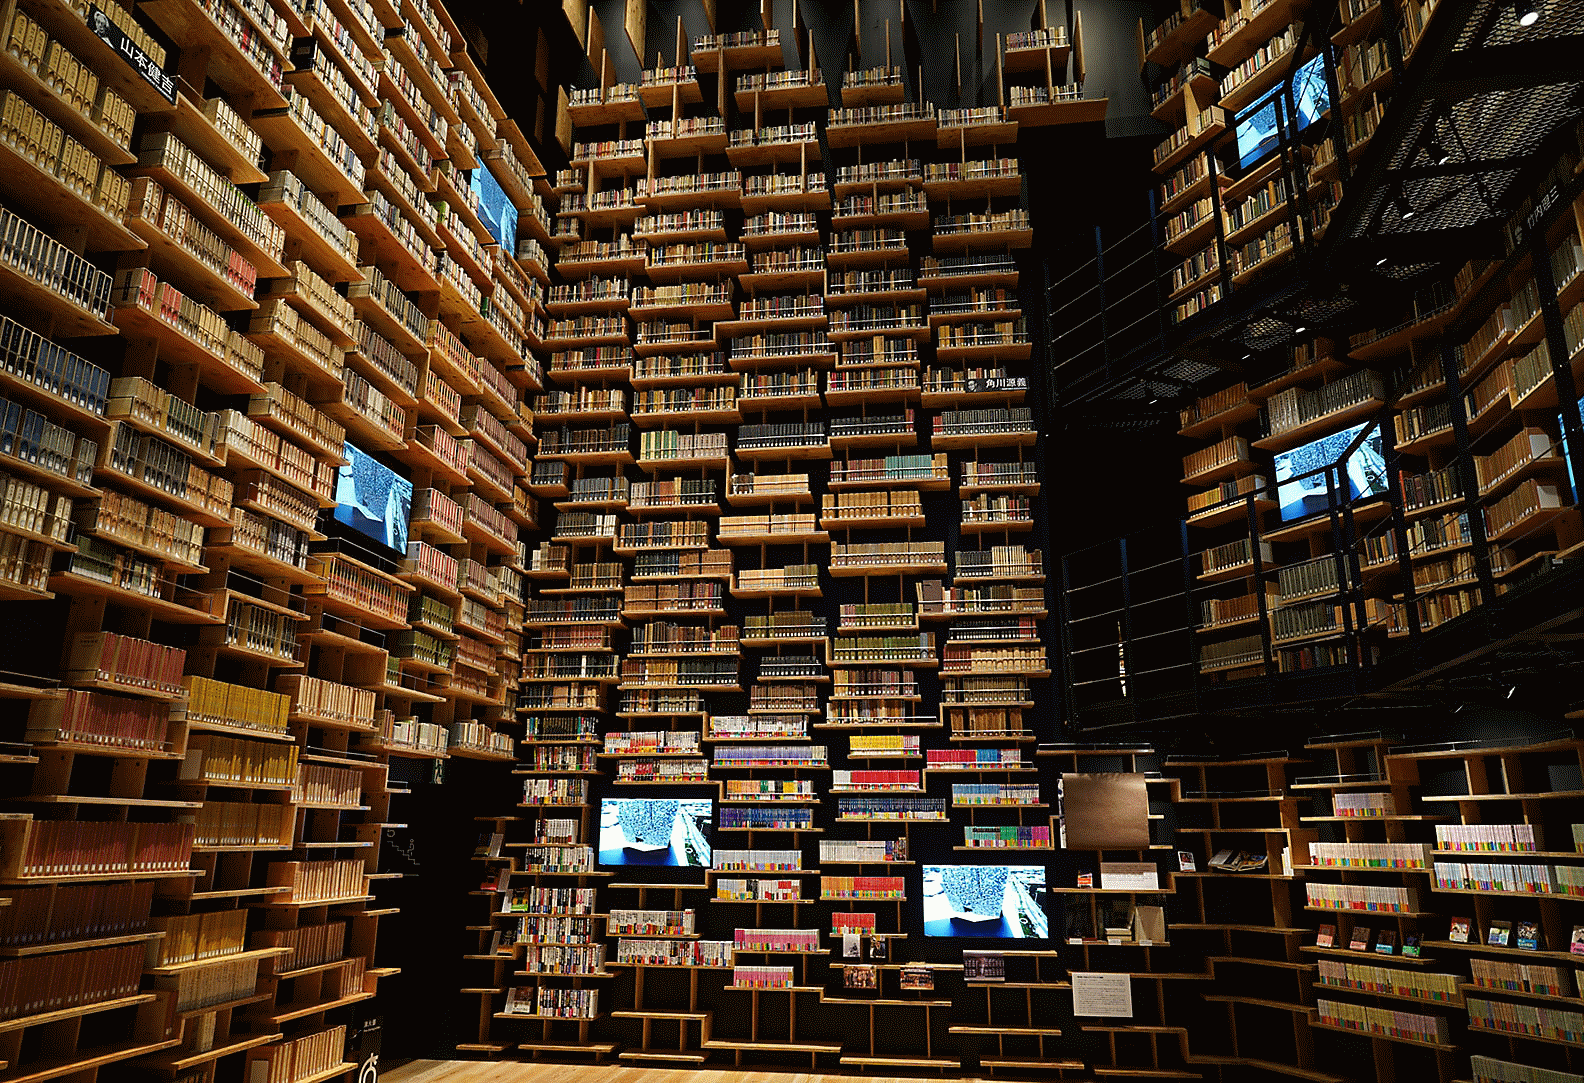 Imagen del interior de una biblioteca capturada con esta lente con high resolution en todo el encuadre